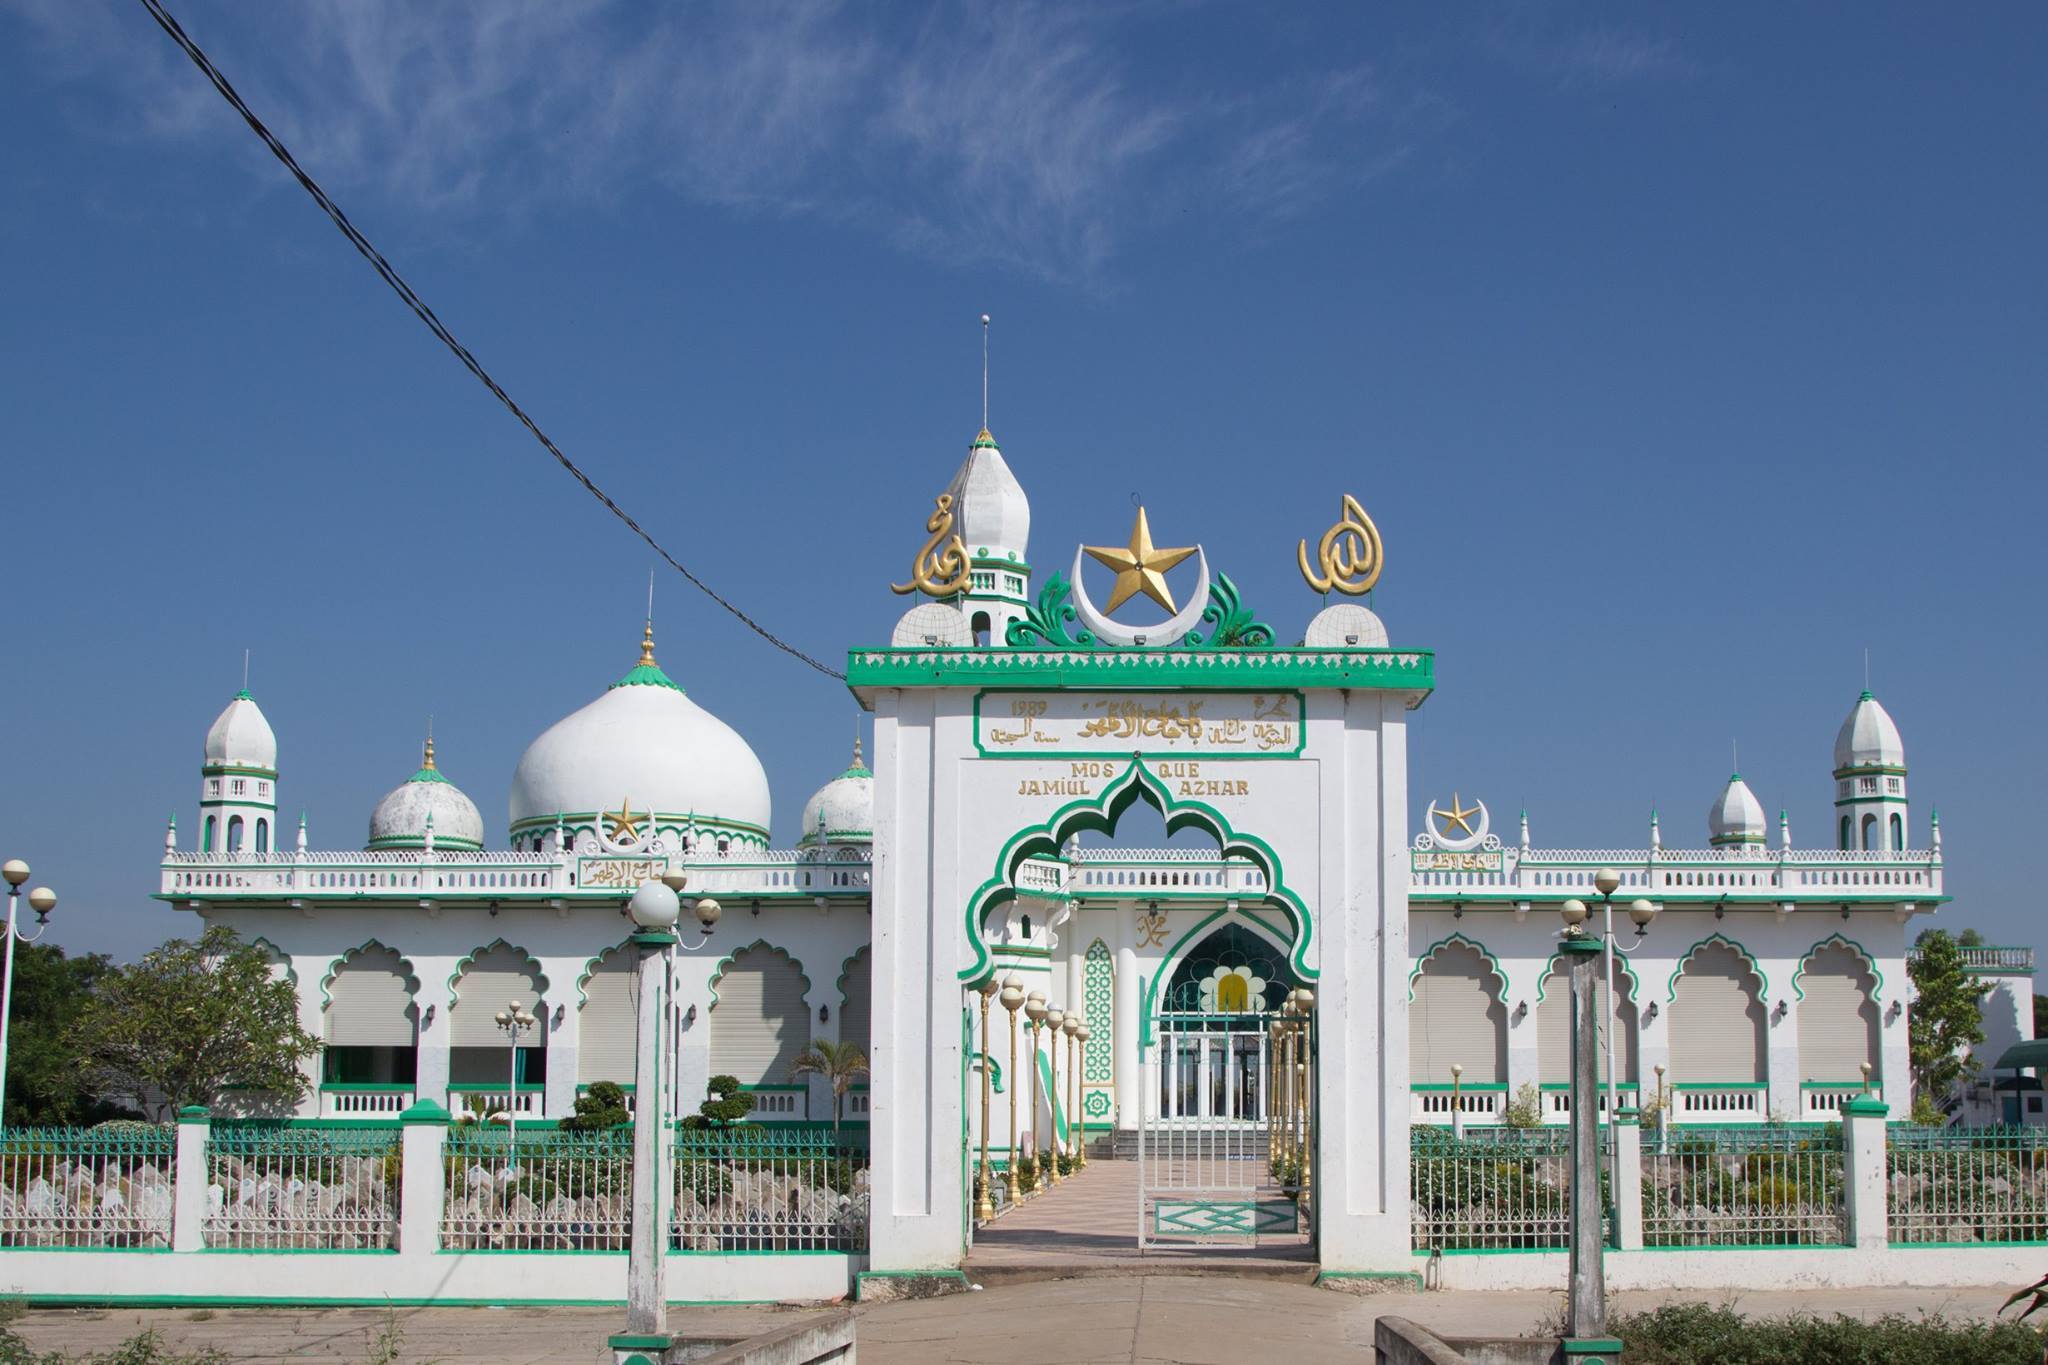 Thánh đường Hồi giáo Châu Phong sở hữu vẻ đẹp độc đáo